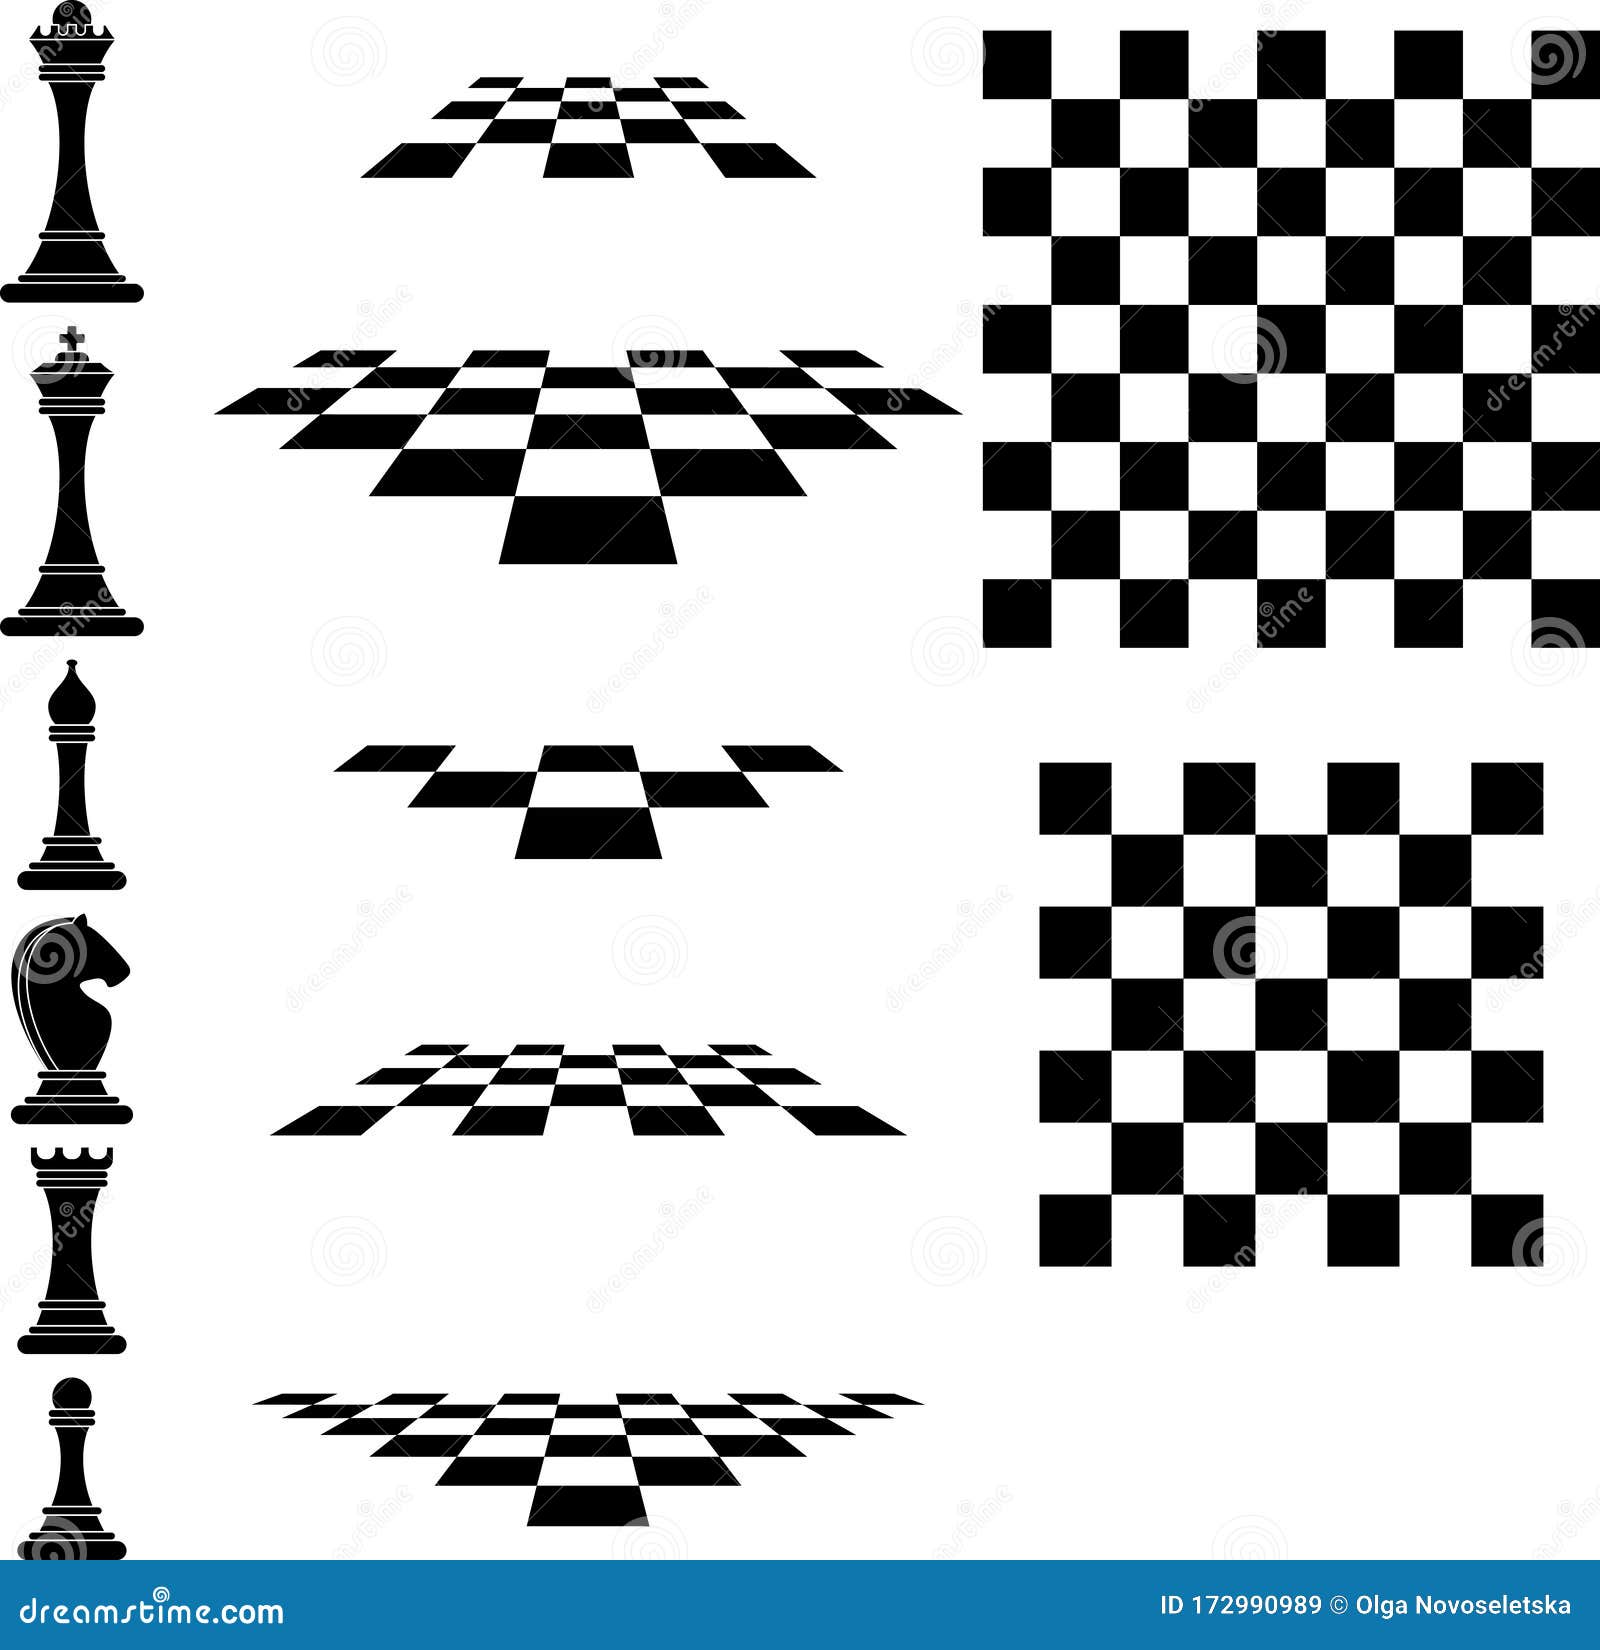 figuras de desenho de uma linha única de xadrez de madeira no tabuleiro de  xadrez. rei, rainha do time adversário. composição para torneio. estilo de  onda de redemoinho. ilustração em vetor gráfico